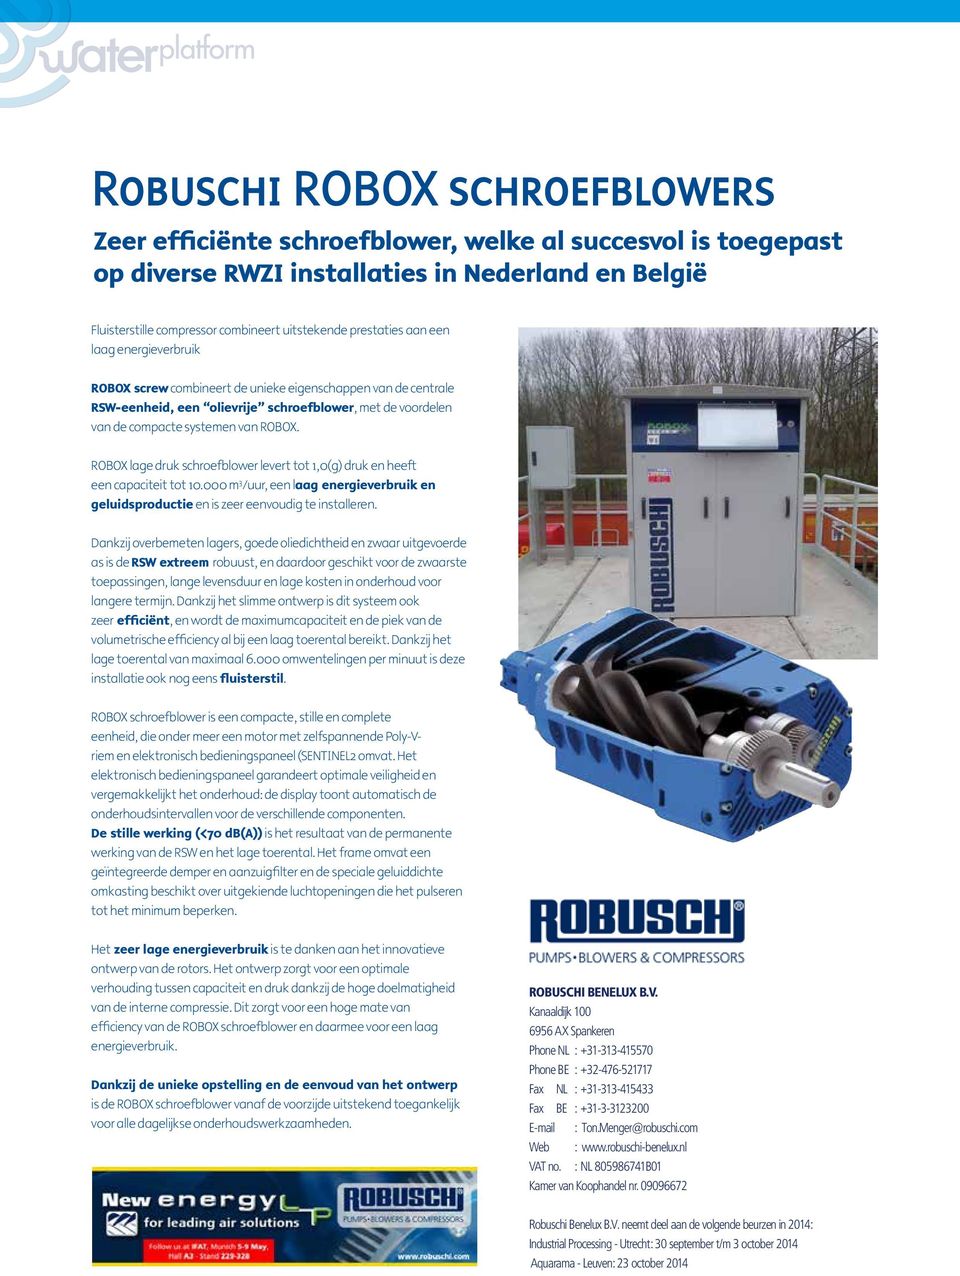 ROBOX lage druk schroefblower levert tot 1,0(g) druk en heeft een capaciteit tot 10.000 m 3 /uur, een laag energieverbruik en geluidsproductie en is zeer eenvoudig te installeren.